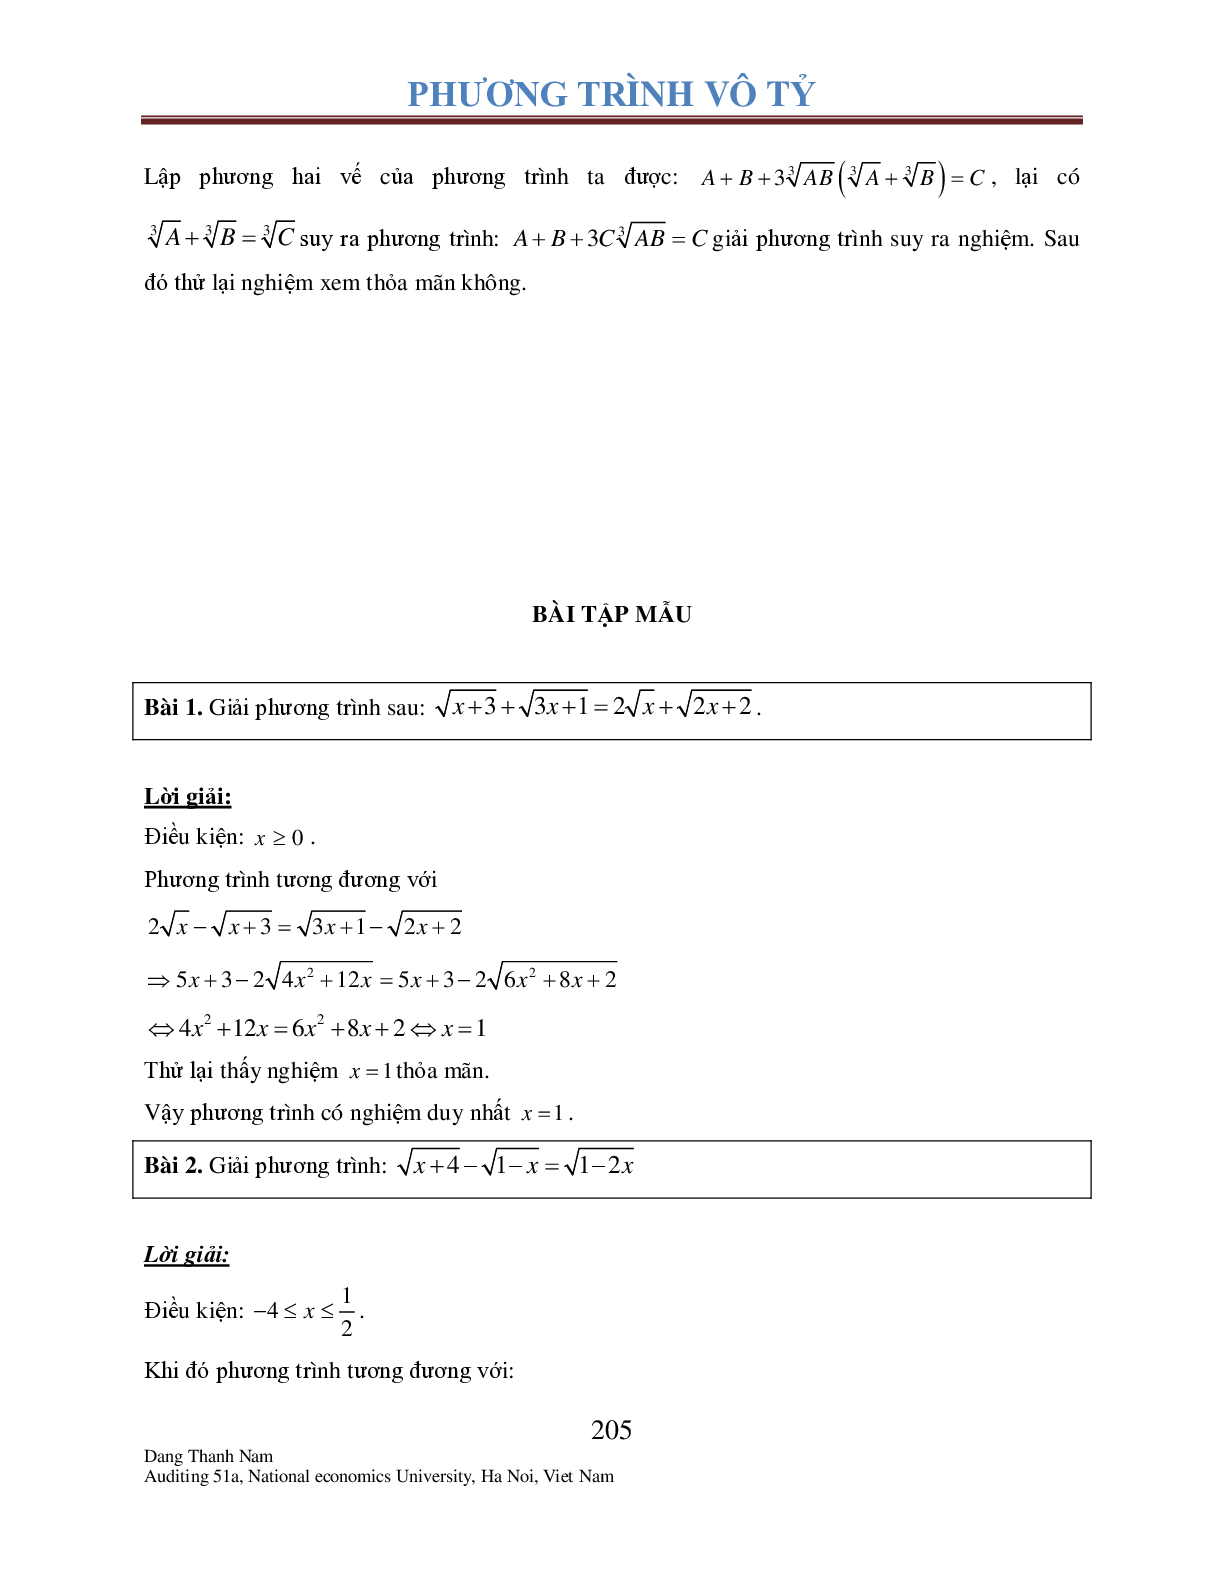 Chuyên đề phương trình Vô tỉ (trang 10)